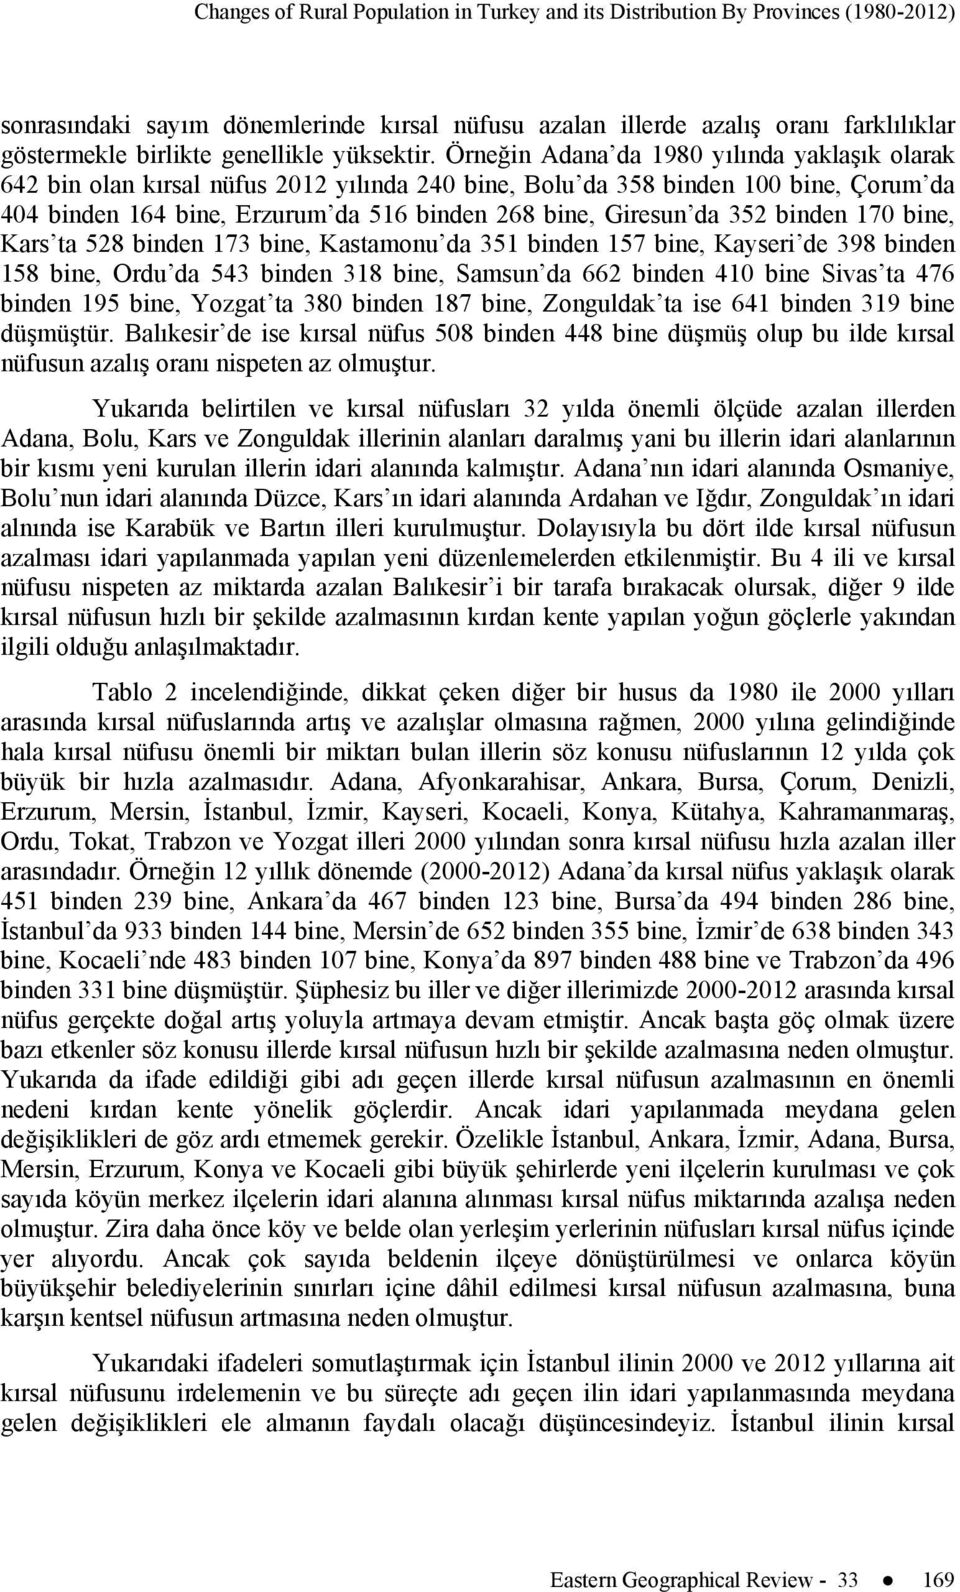 Örneğin Adana da 1980 yılında yaklaşık olarak 642 bin olan kırsal nüfus 2012 yılında 240 bine, Bolu da 358 binden 100 bine, Çorum da 404 binden 164 bine, Erzurum da 516 binden 268 bine, Giresun da